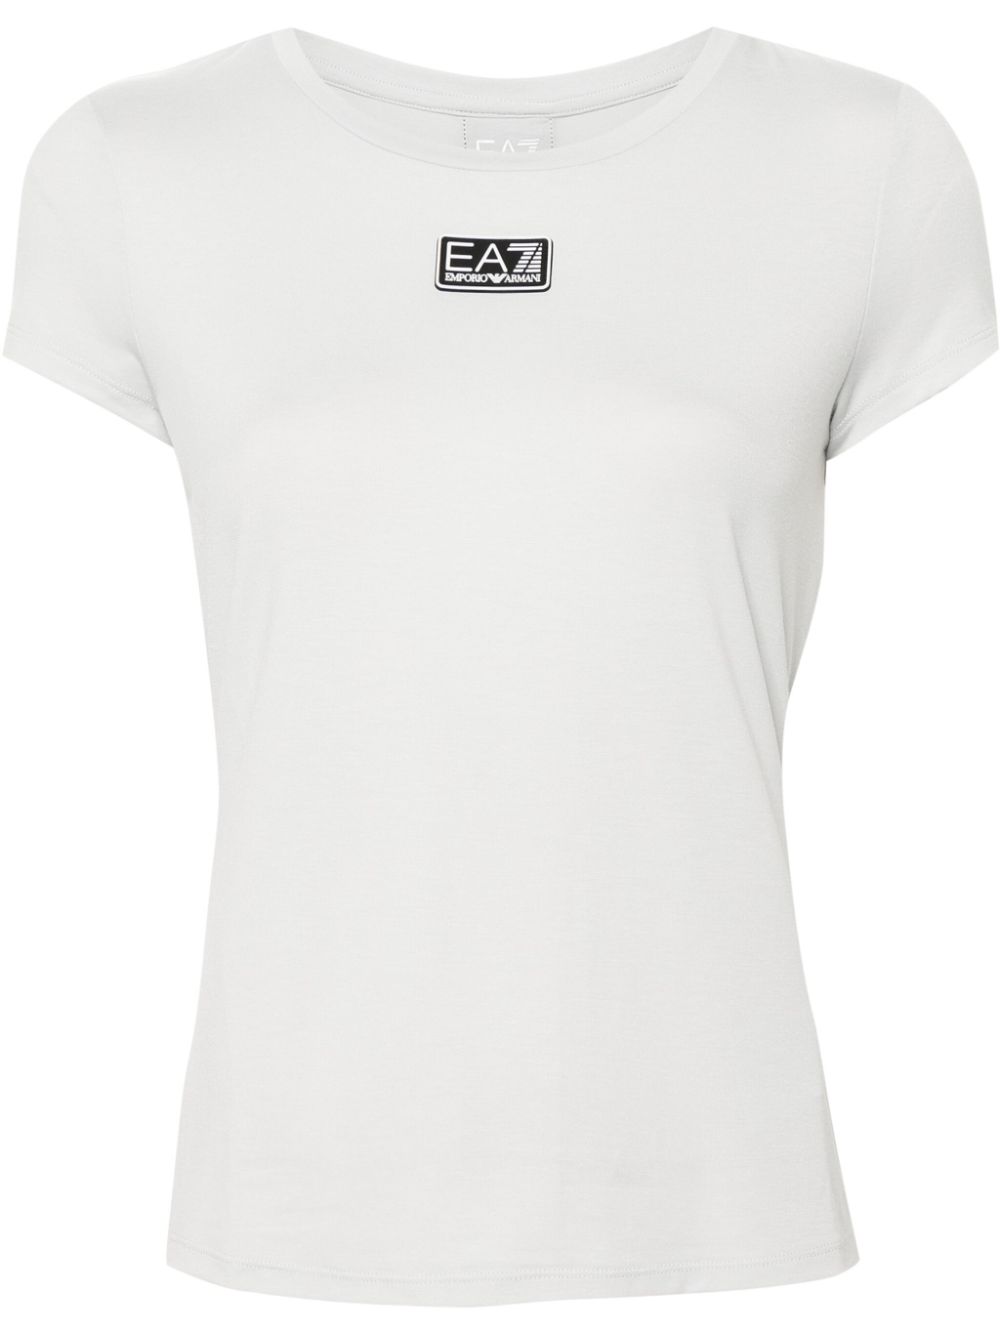 Ea7 Emporio Armani logo-patch T-shirt - Grey von Ea7 Emporio Armani